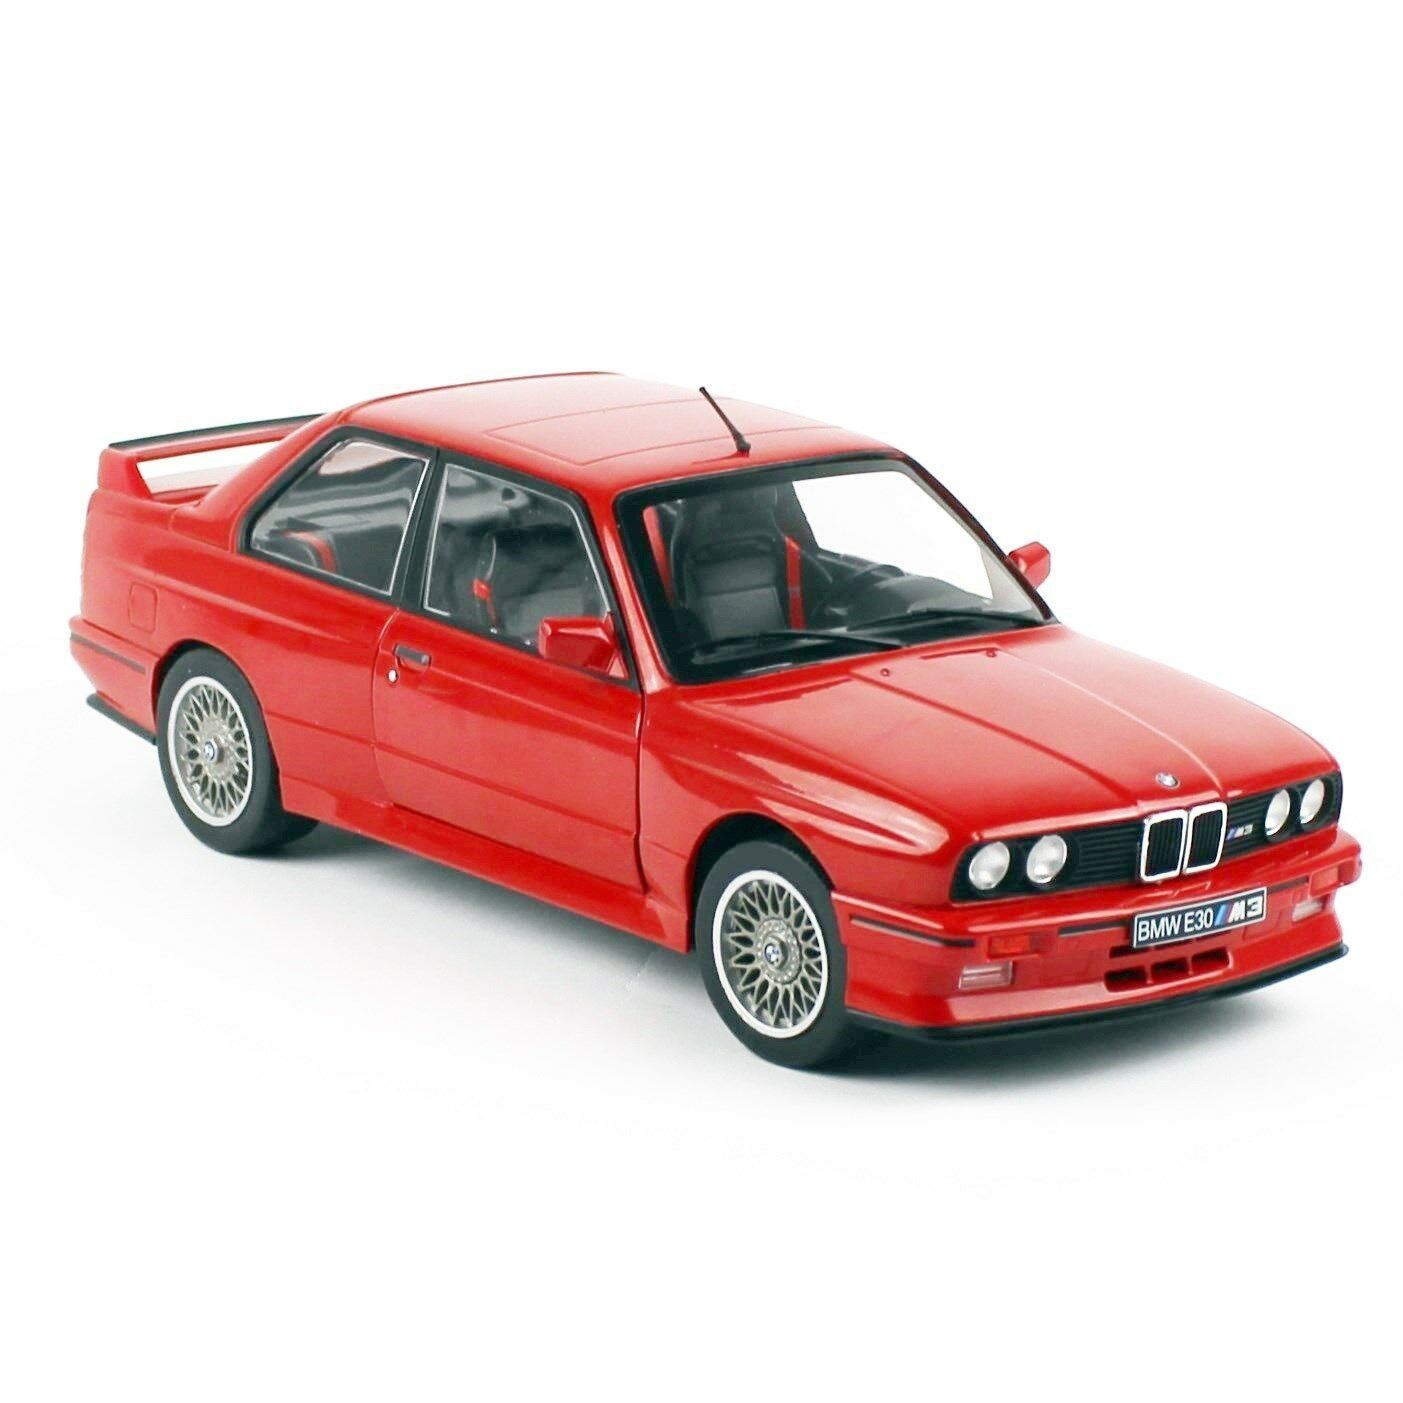 Solido 1801502 1/18 Ölçek 1986 Bmw M3 E30 Sport Evo, Kırmızı, Sergilemeye Hazır Metal Araba Modeli